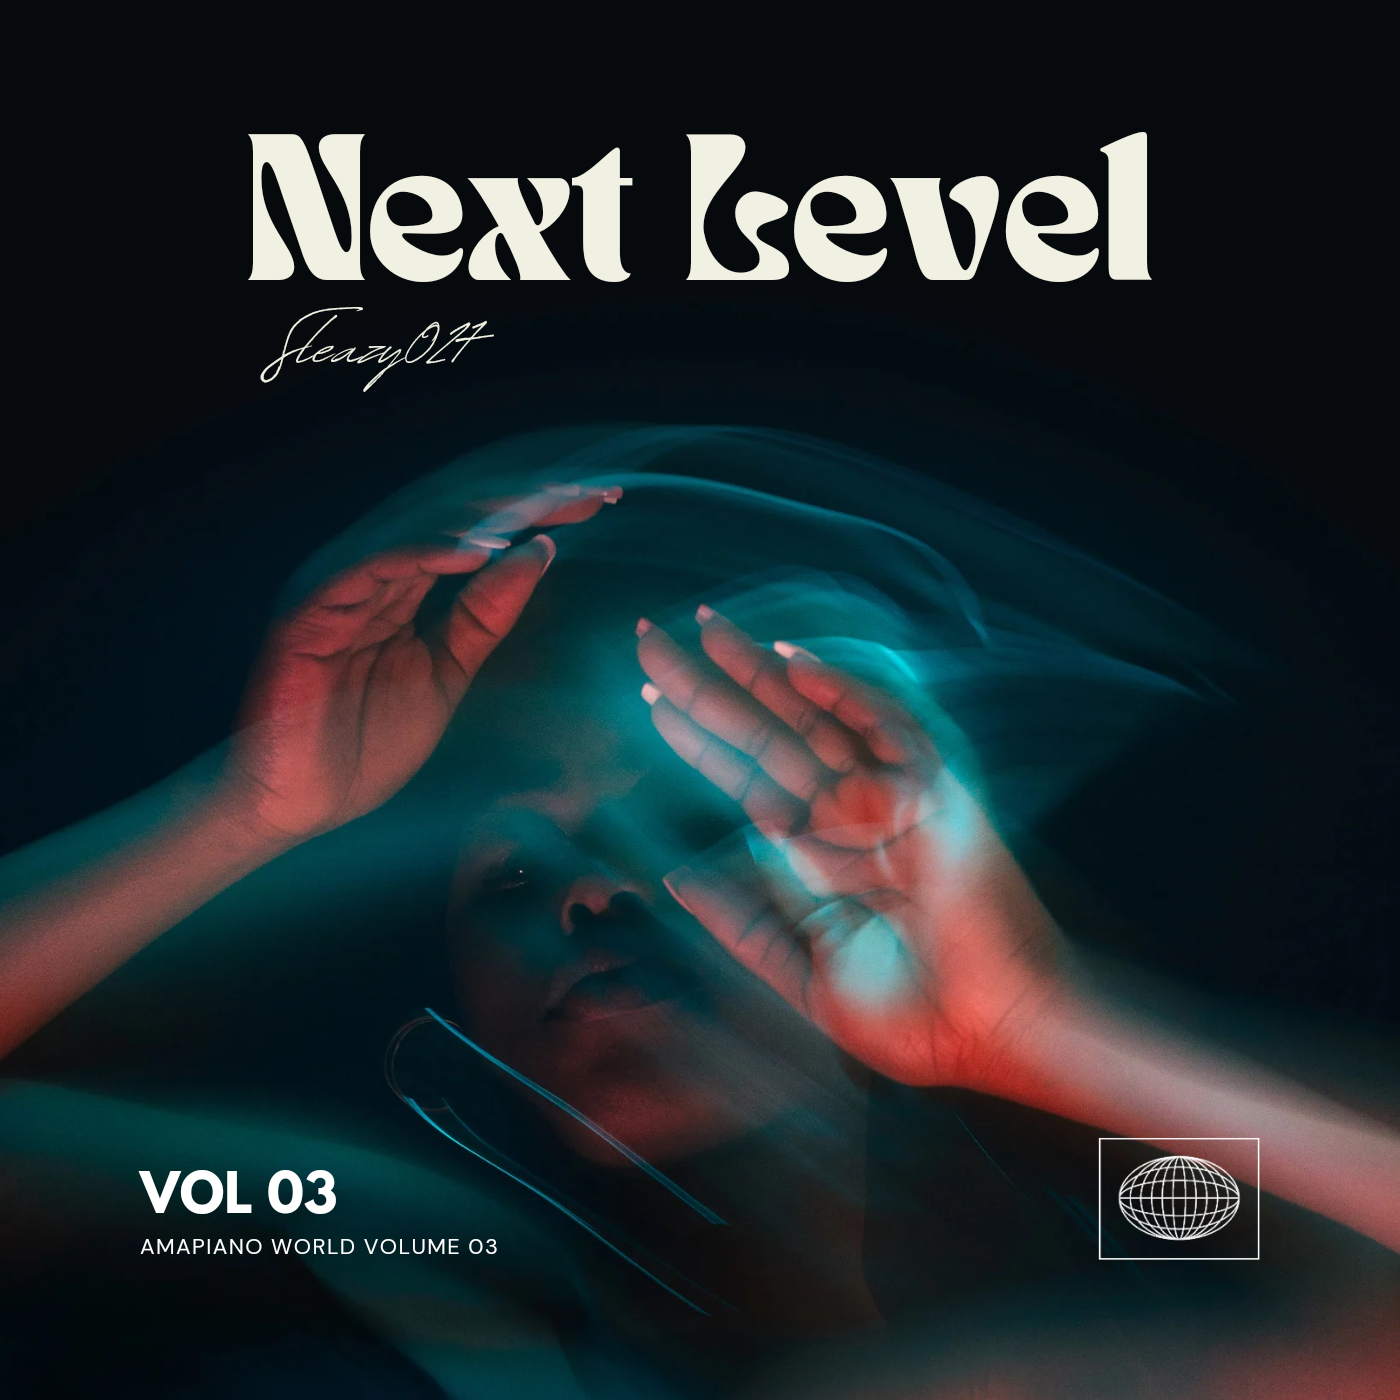 Next Level 3.0 - Sleazy027